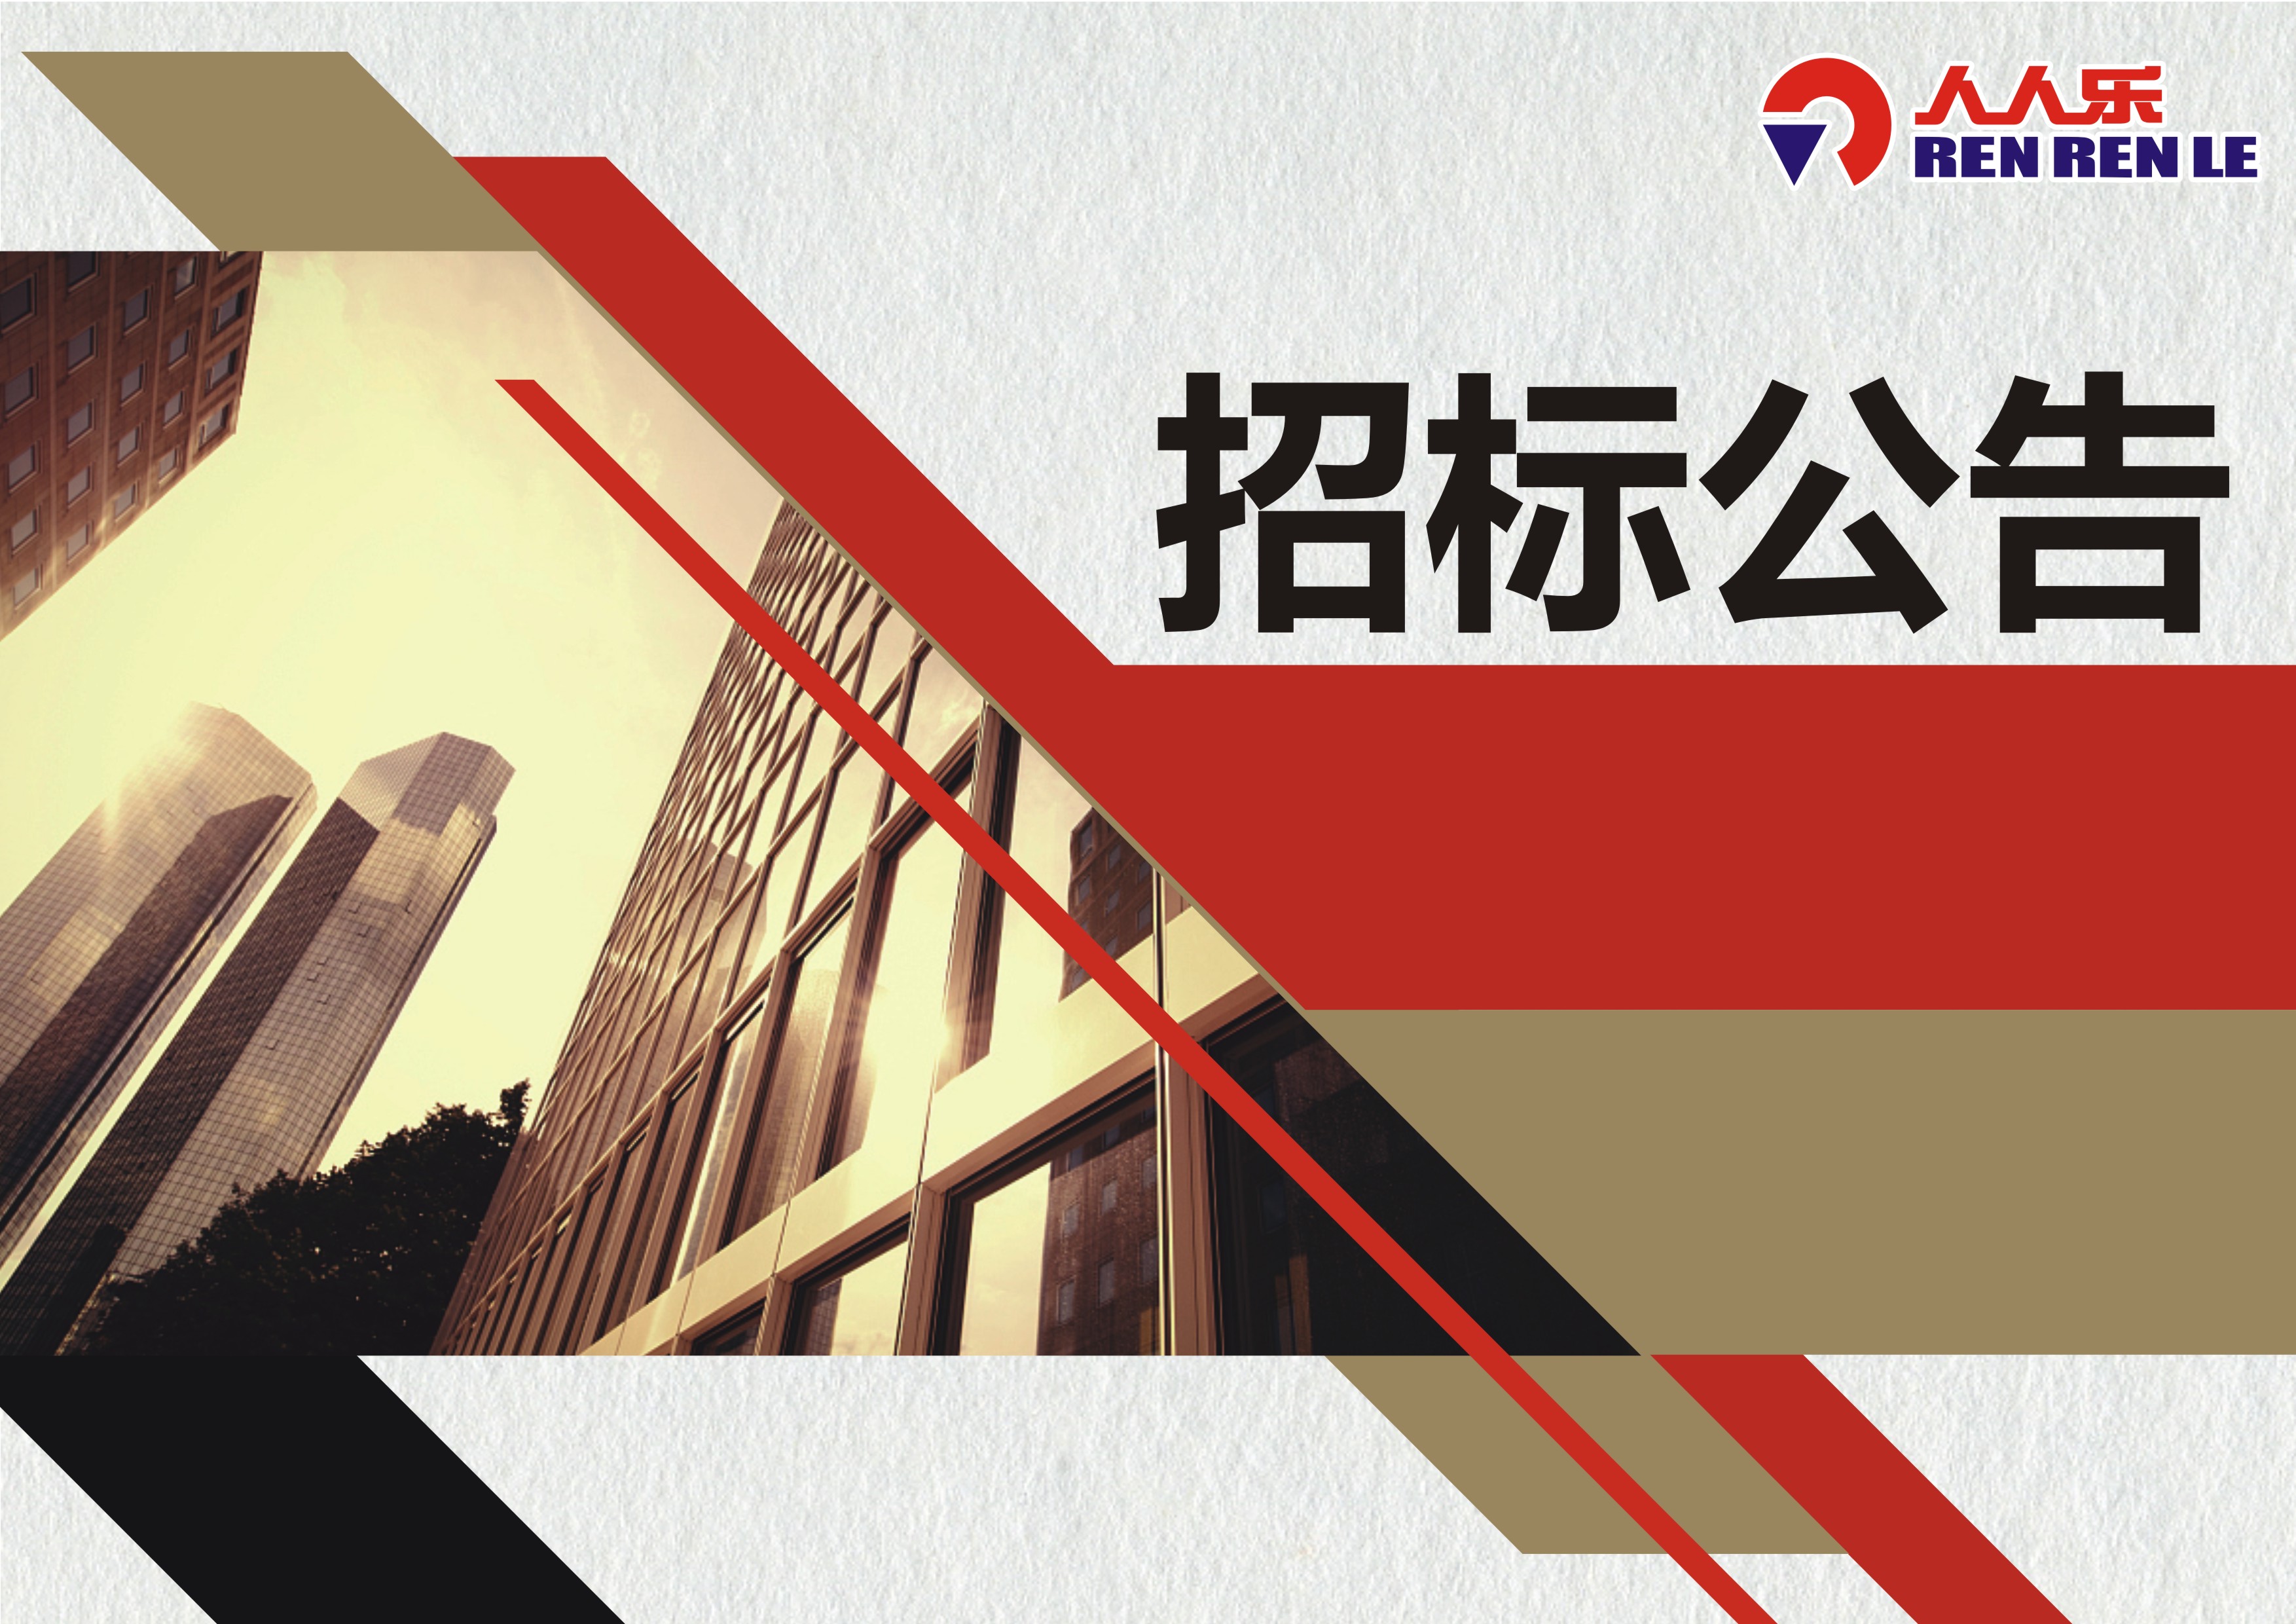 天津市人人乐商业有限公司 电梯设备年度维护保养招标